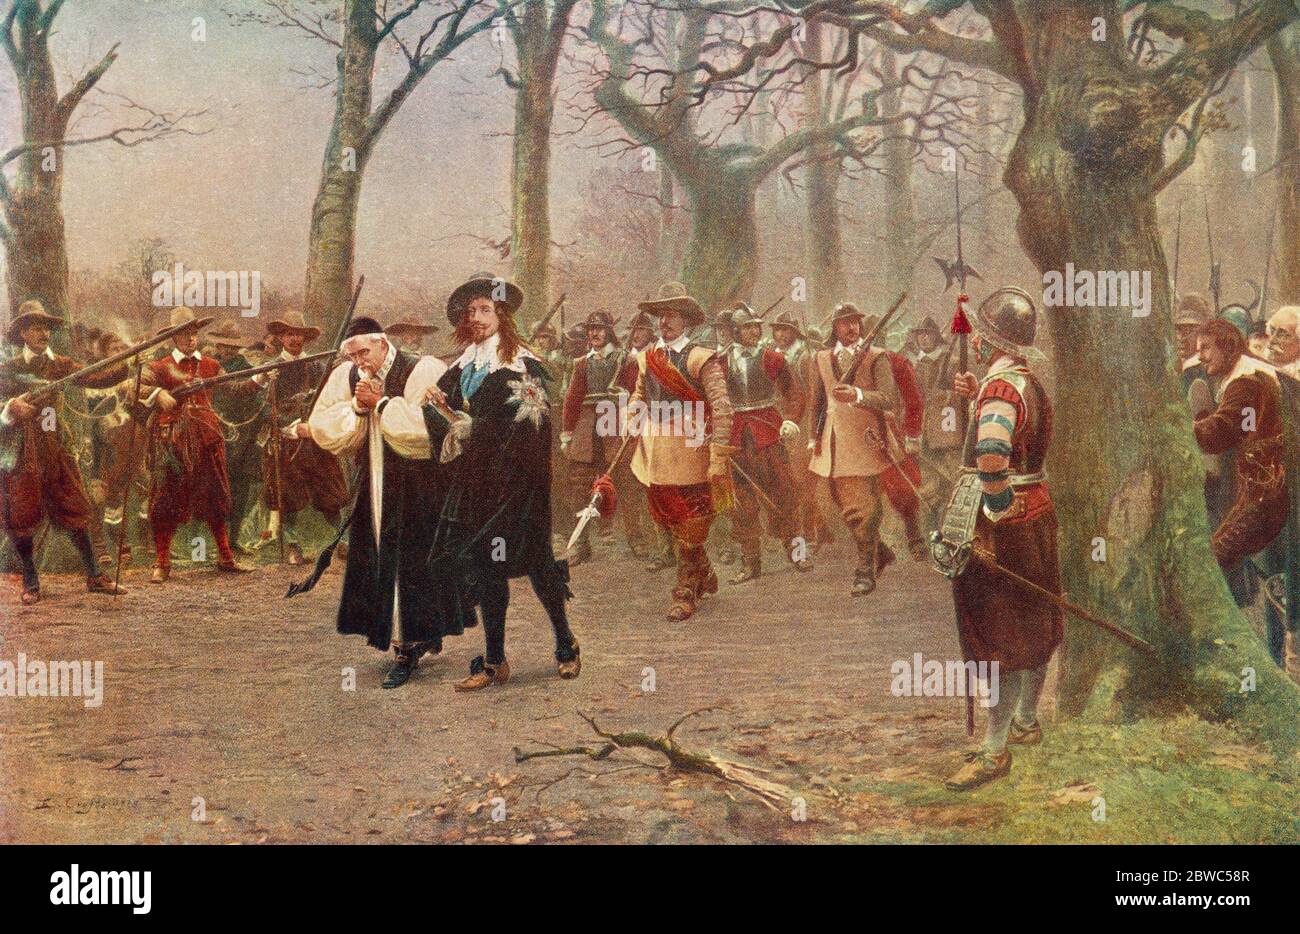 Charles I., 1600 - 1649. König von England, hier auf dem Weg zur Hinrichtung gesehen. Nach dem Gemälde von Ernest Crofts. Aus Großbritannien und ihren Nachbarn, 1485 - 1688, veröffentlicht 1923. Stockfoto